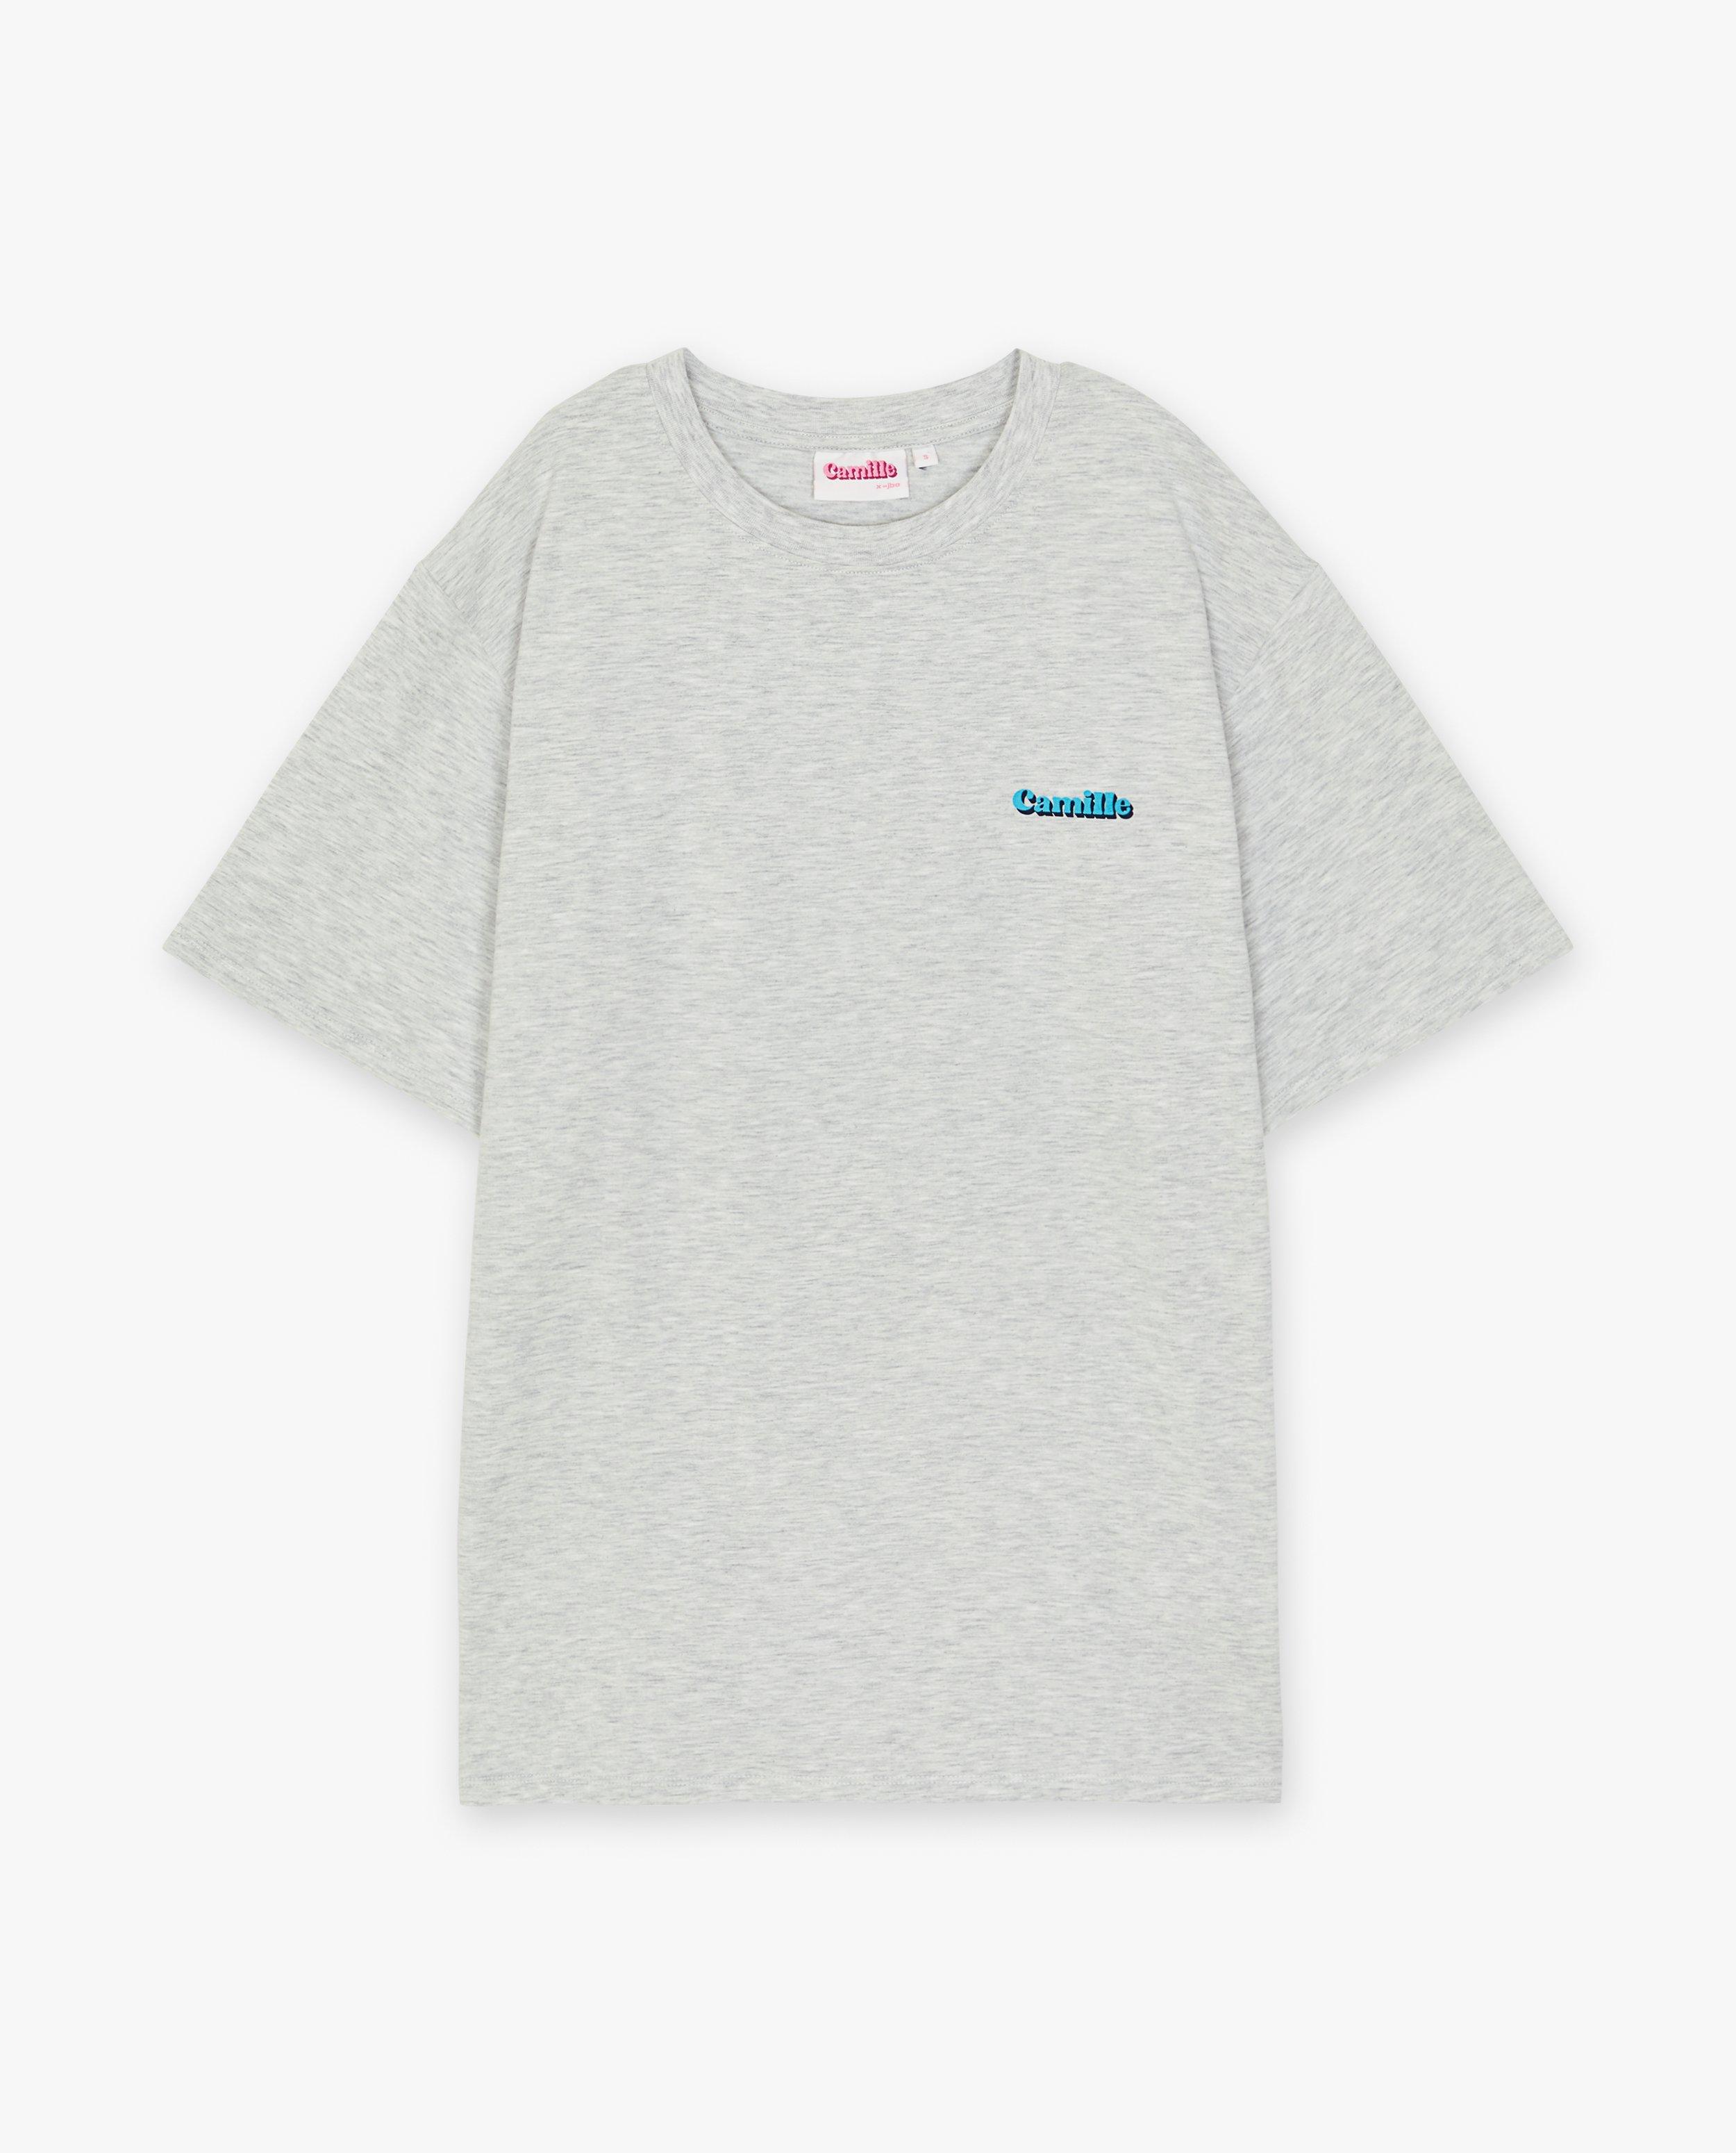 T-shirt gris à inscription, XXS-XL - null - CAMILLE